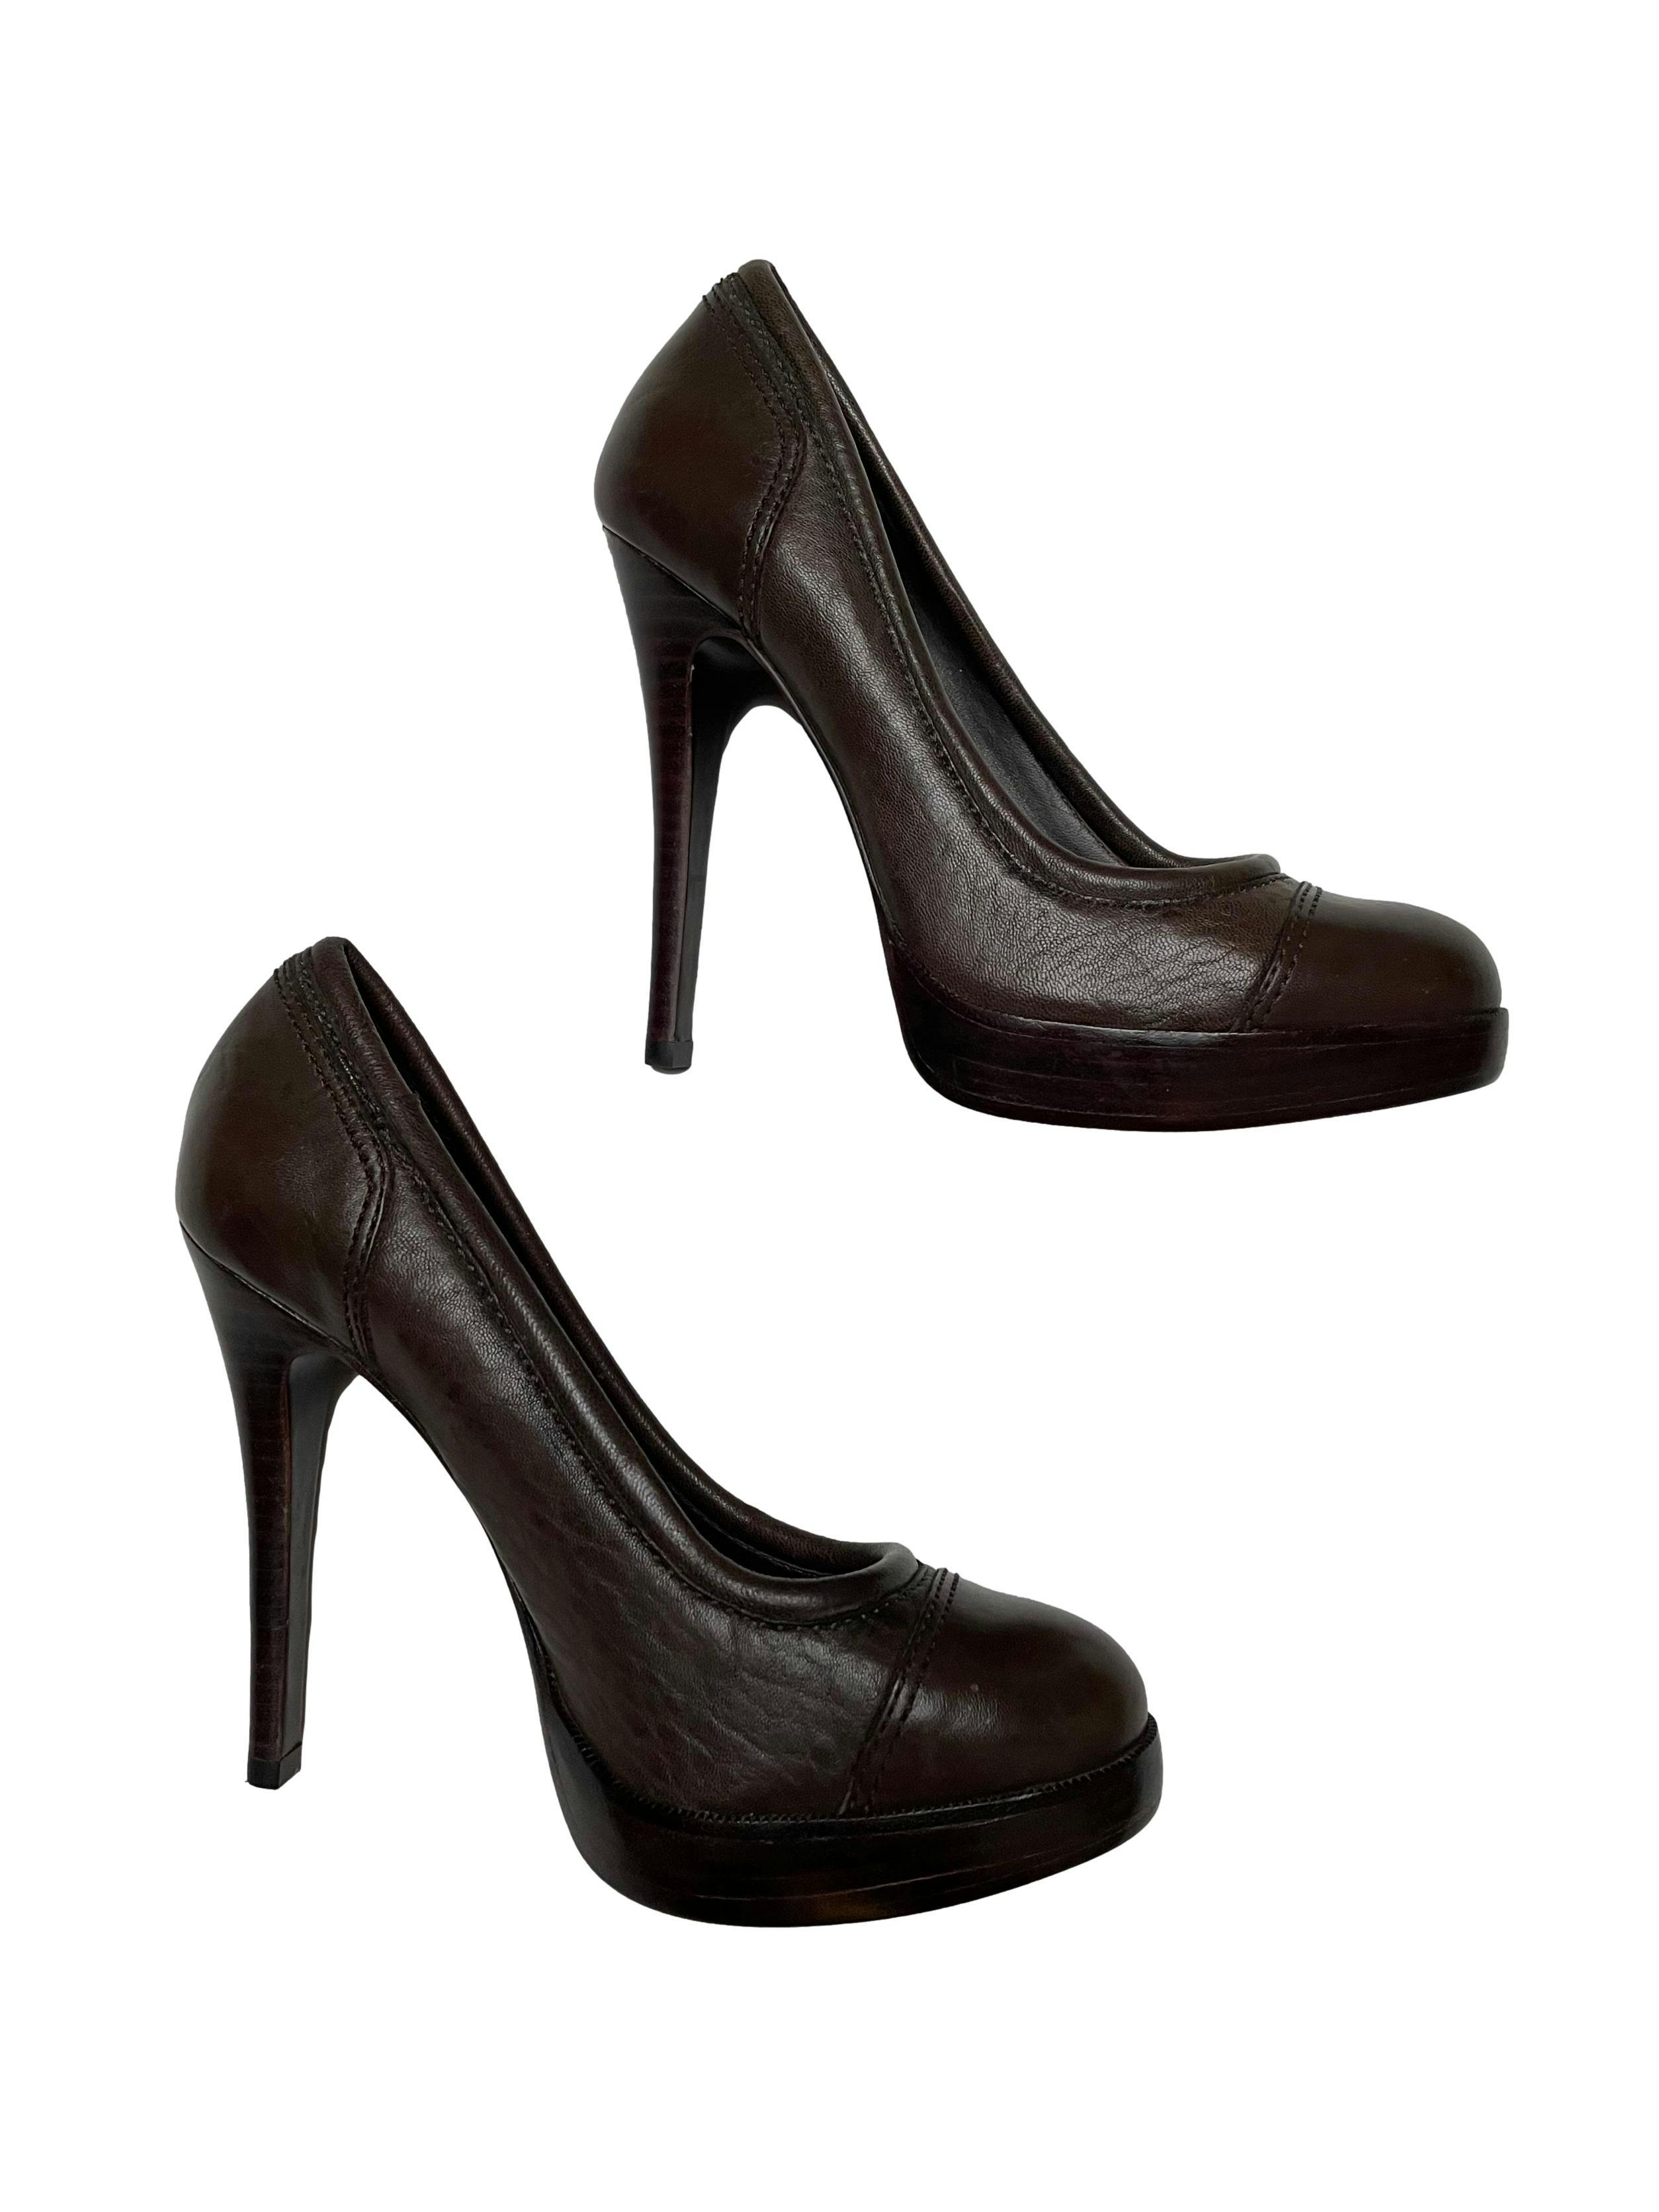 Zapatos Tory Burch 100% cuero marrón, taco 12 plataforma 2cm. Estado 9/10.  Precio original $250 | Las Traperas